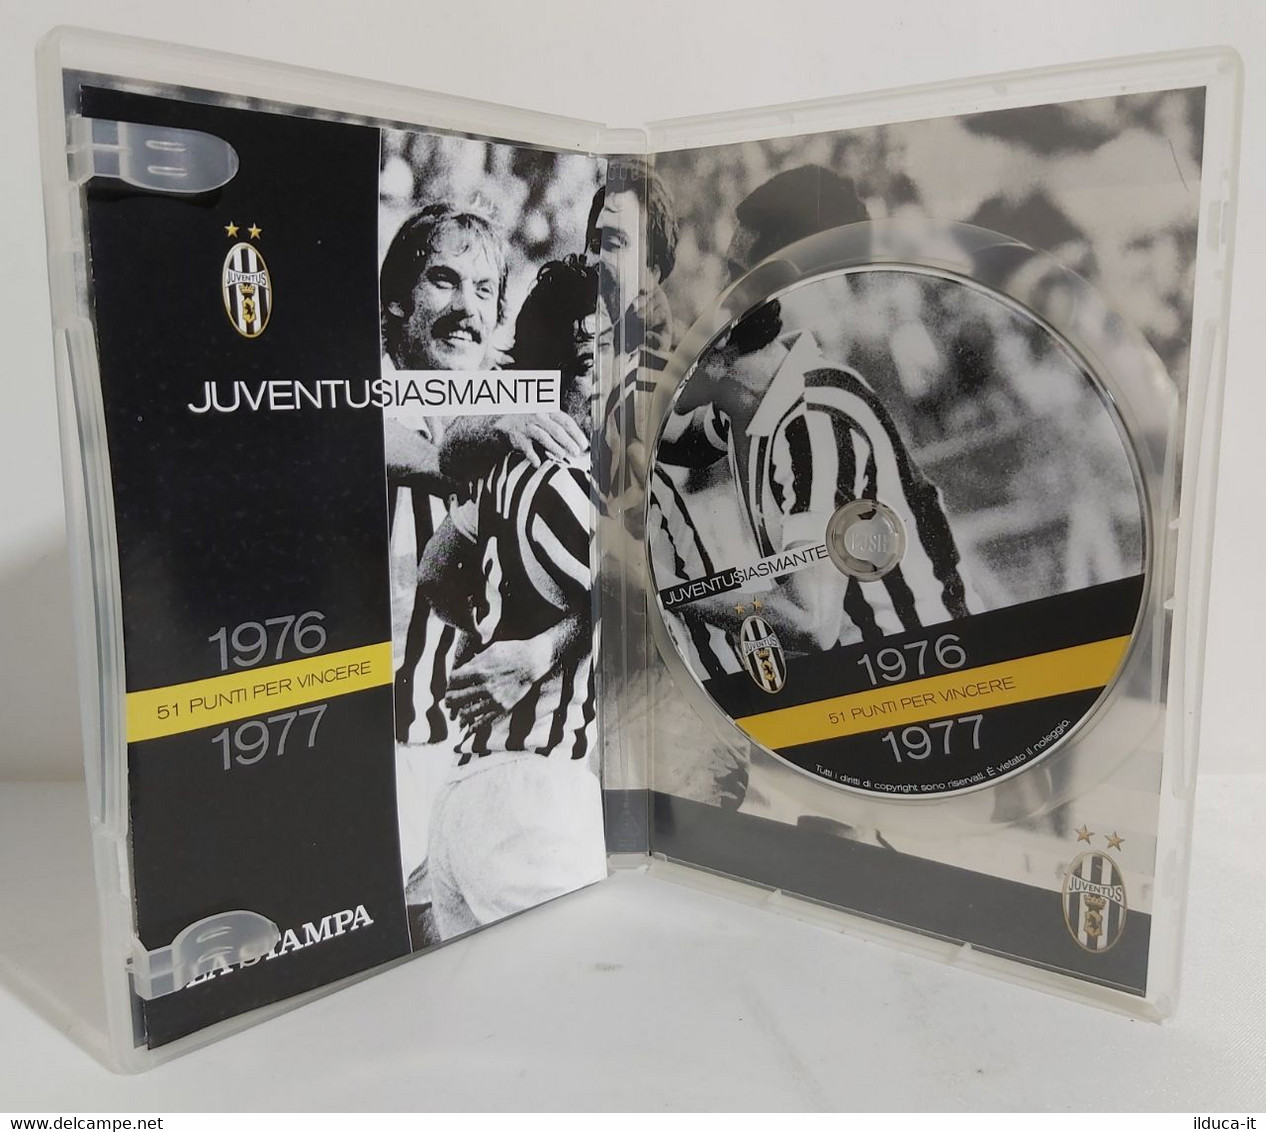 I101801 DVD Juventus - Juventusiasmante 1976-1977 - 51 Punti Per Vincere - Deporte